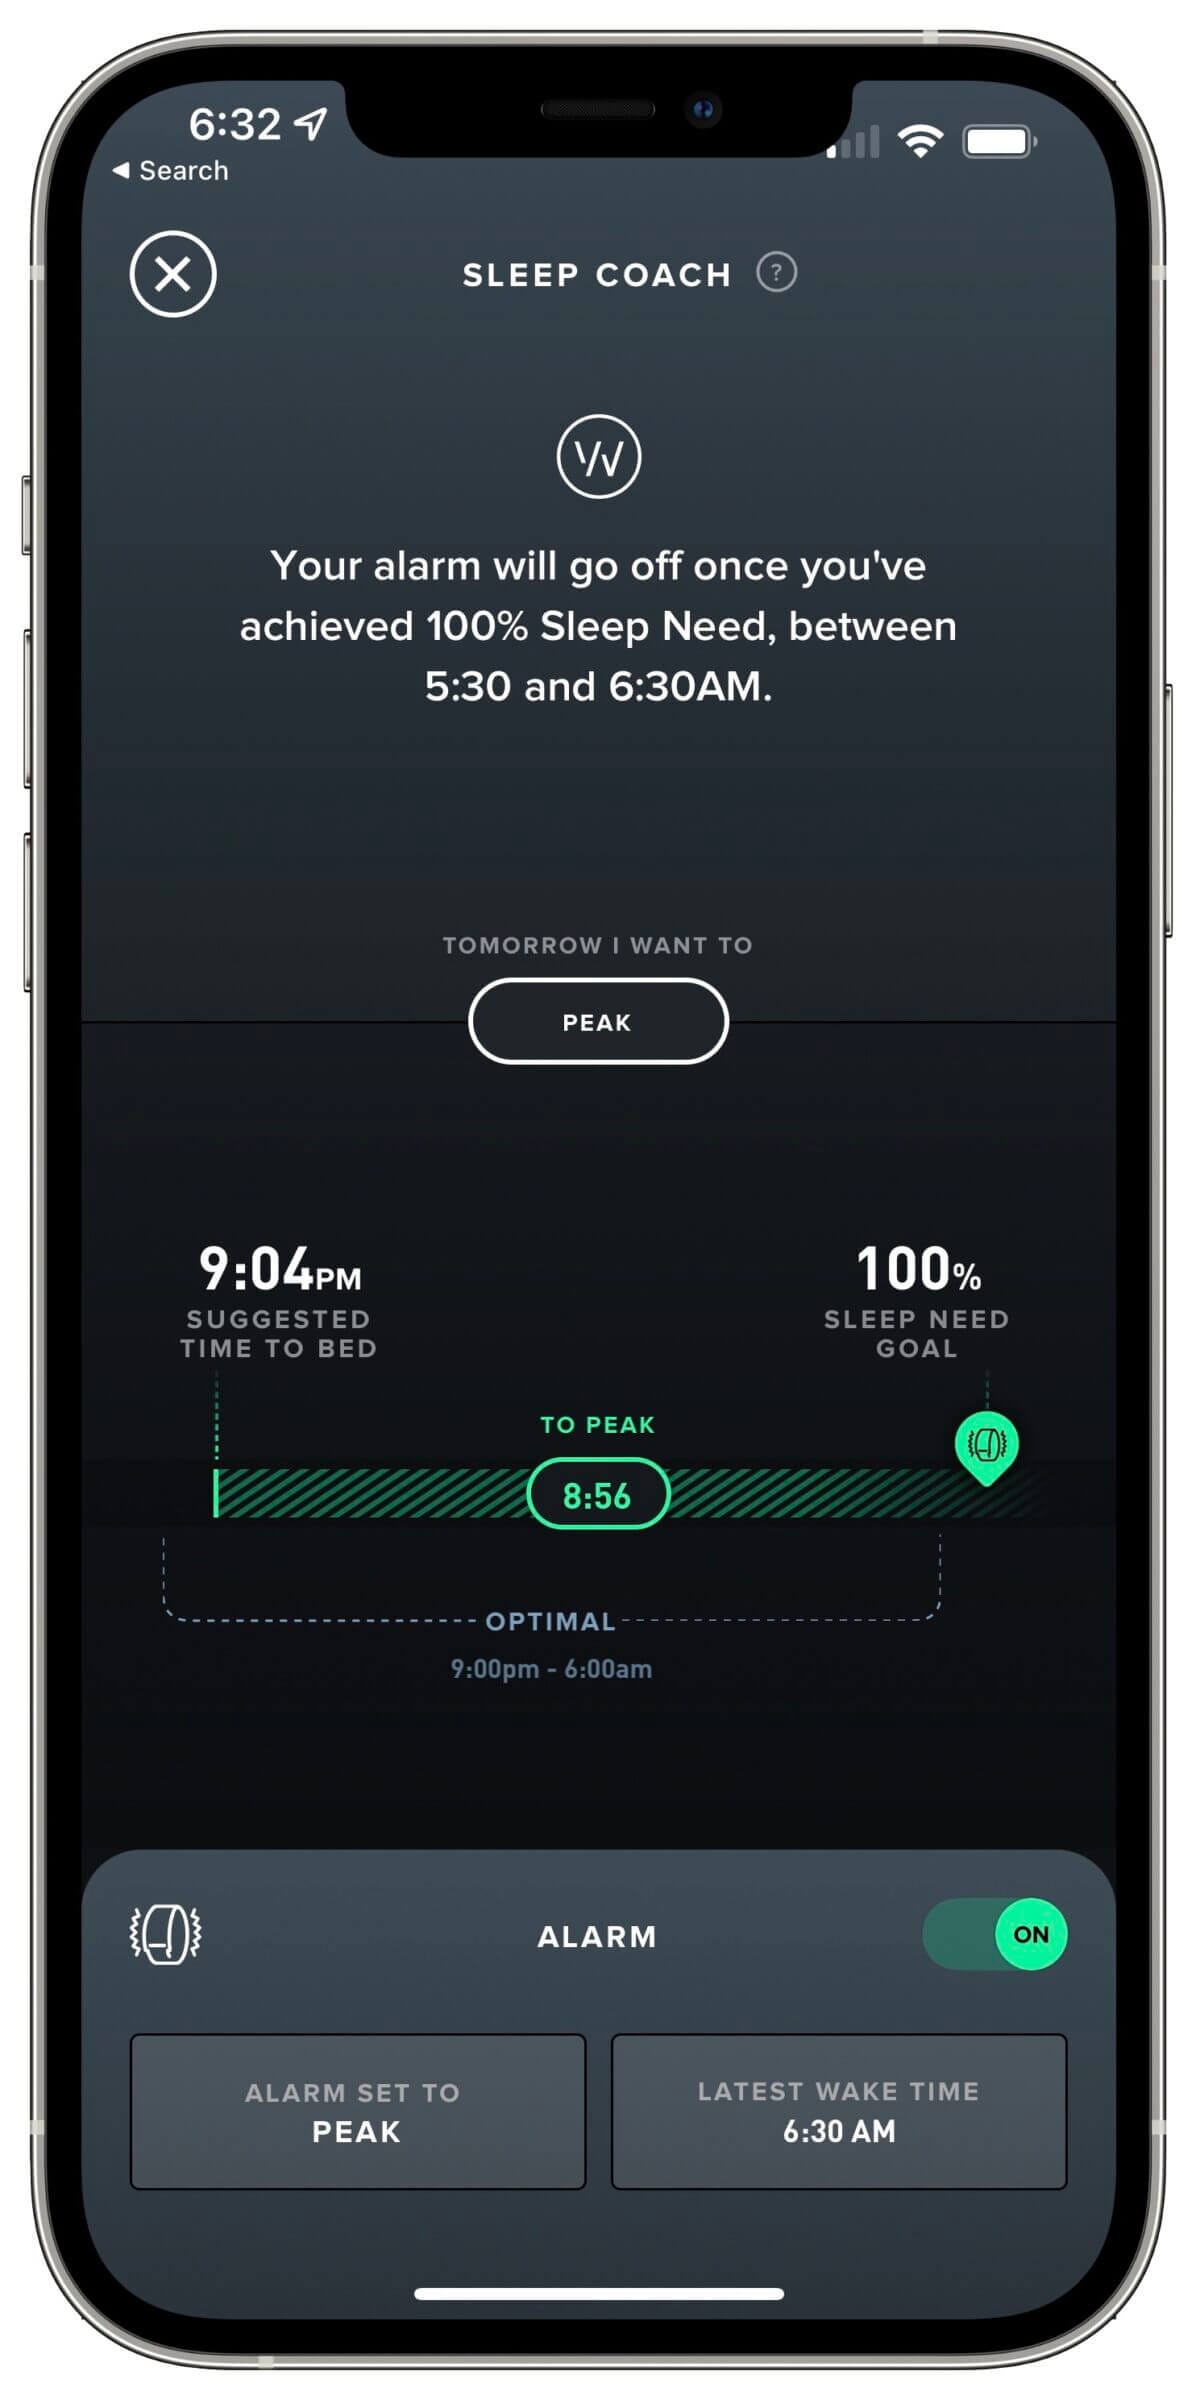 WHOOP App - Sleep Coach and Haptic Alarm